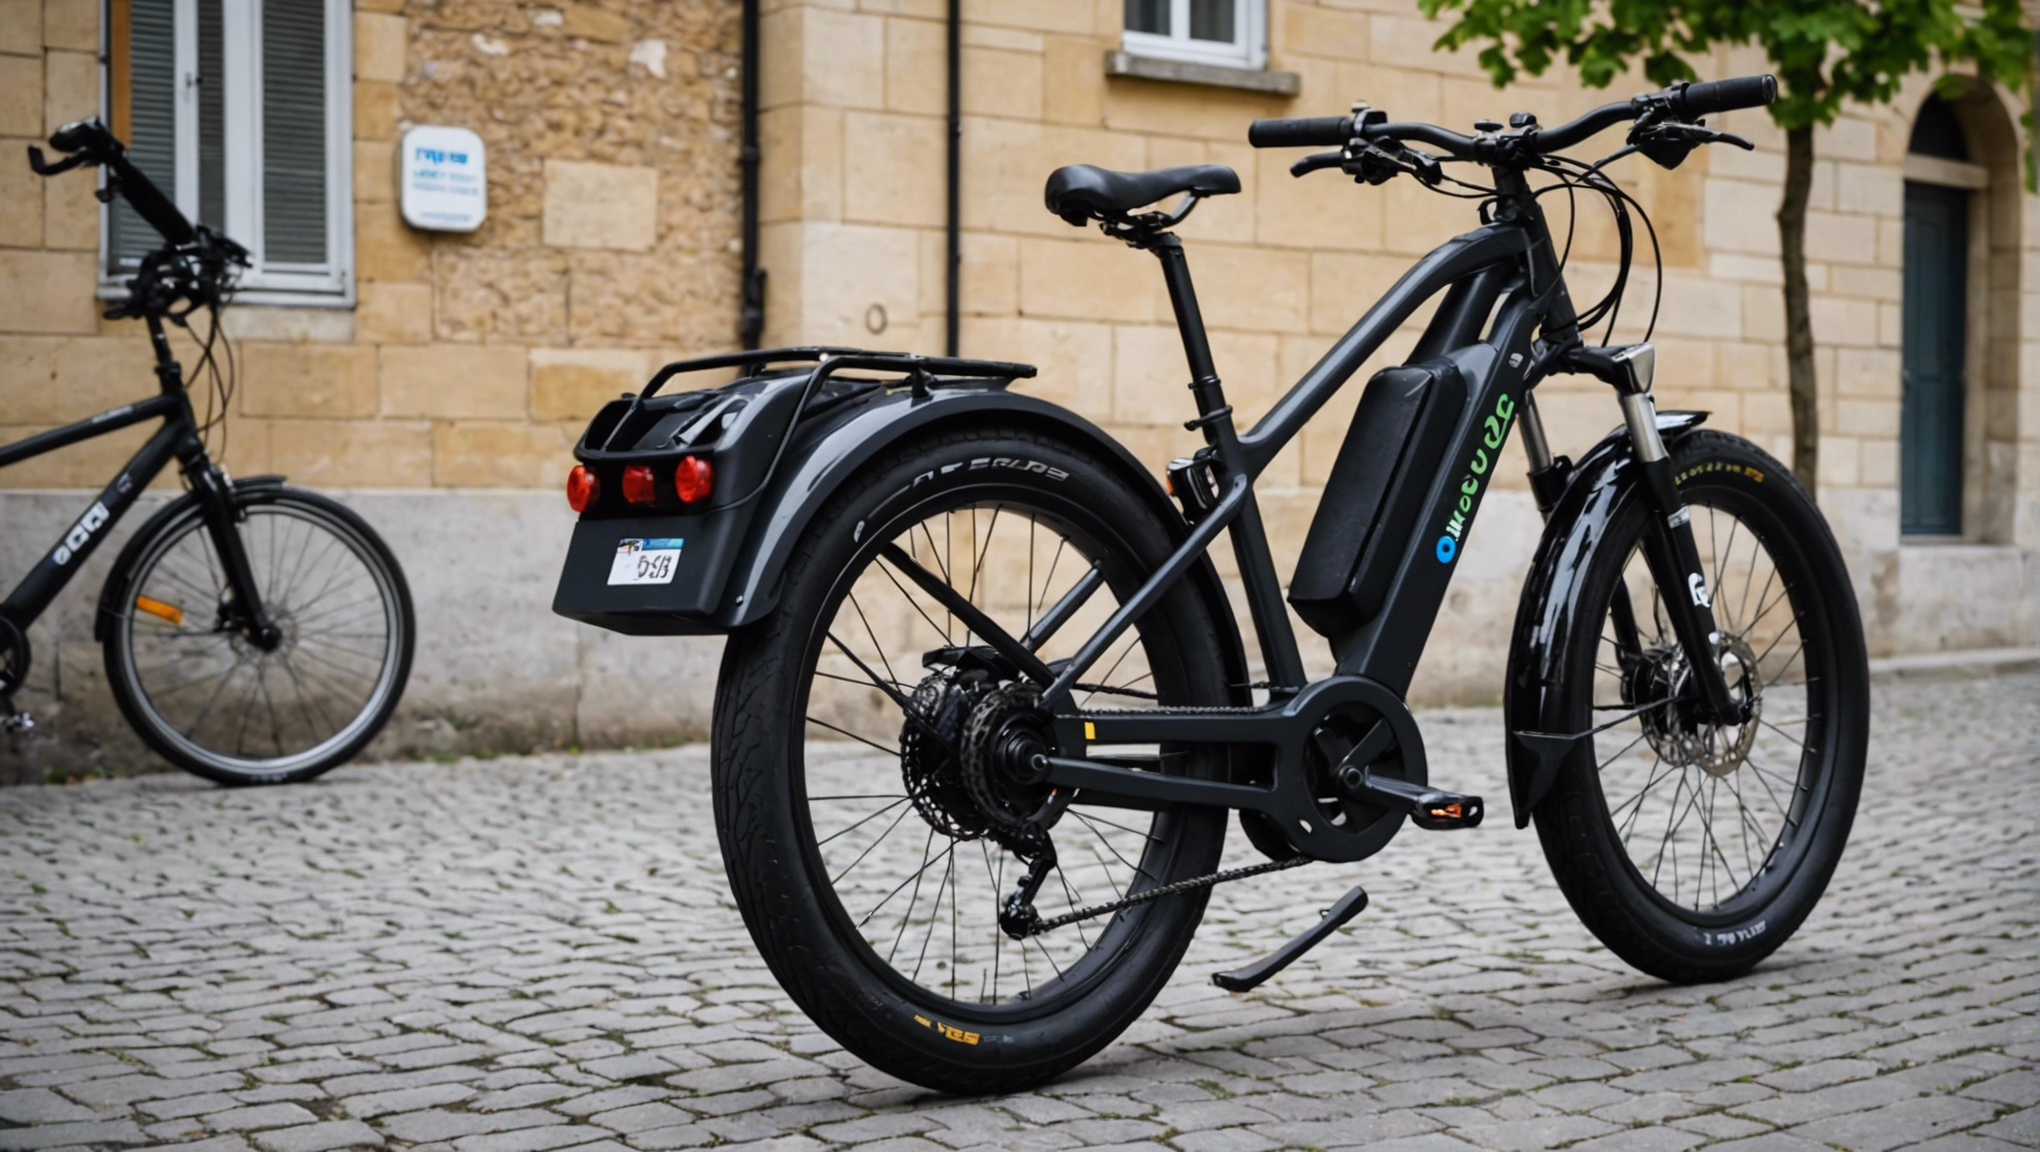 découvrez les avantages et inconvénients des batteries 36v et 48v pour les vélos électriques, et choisissez la solution adaptée à vos besoins !